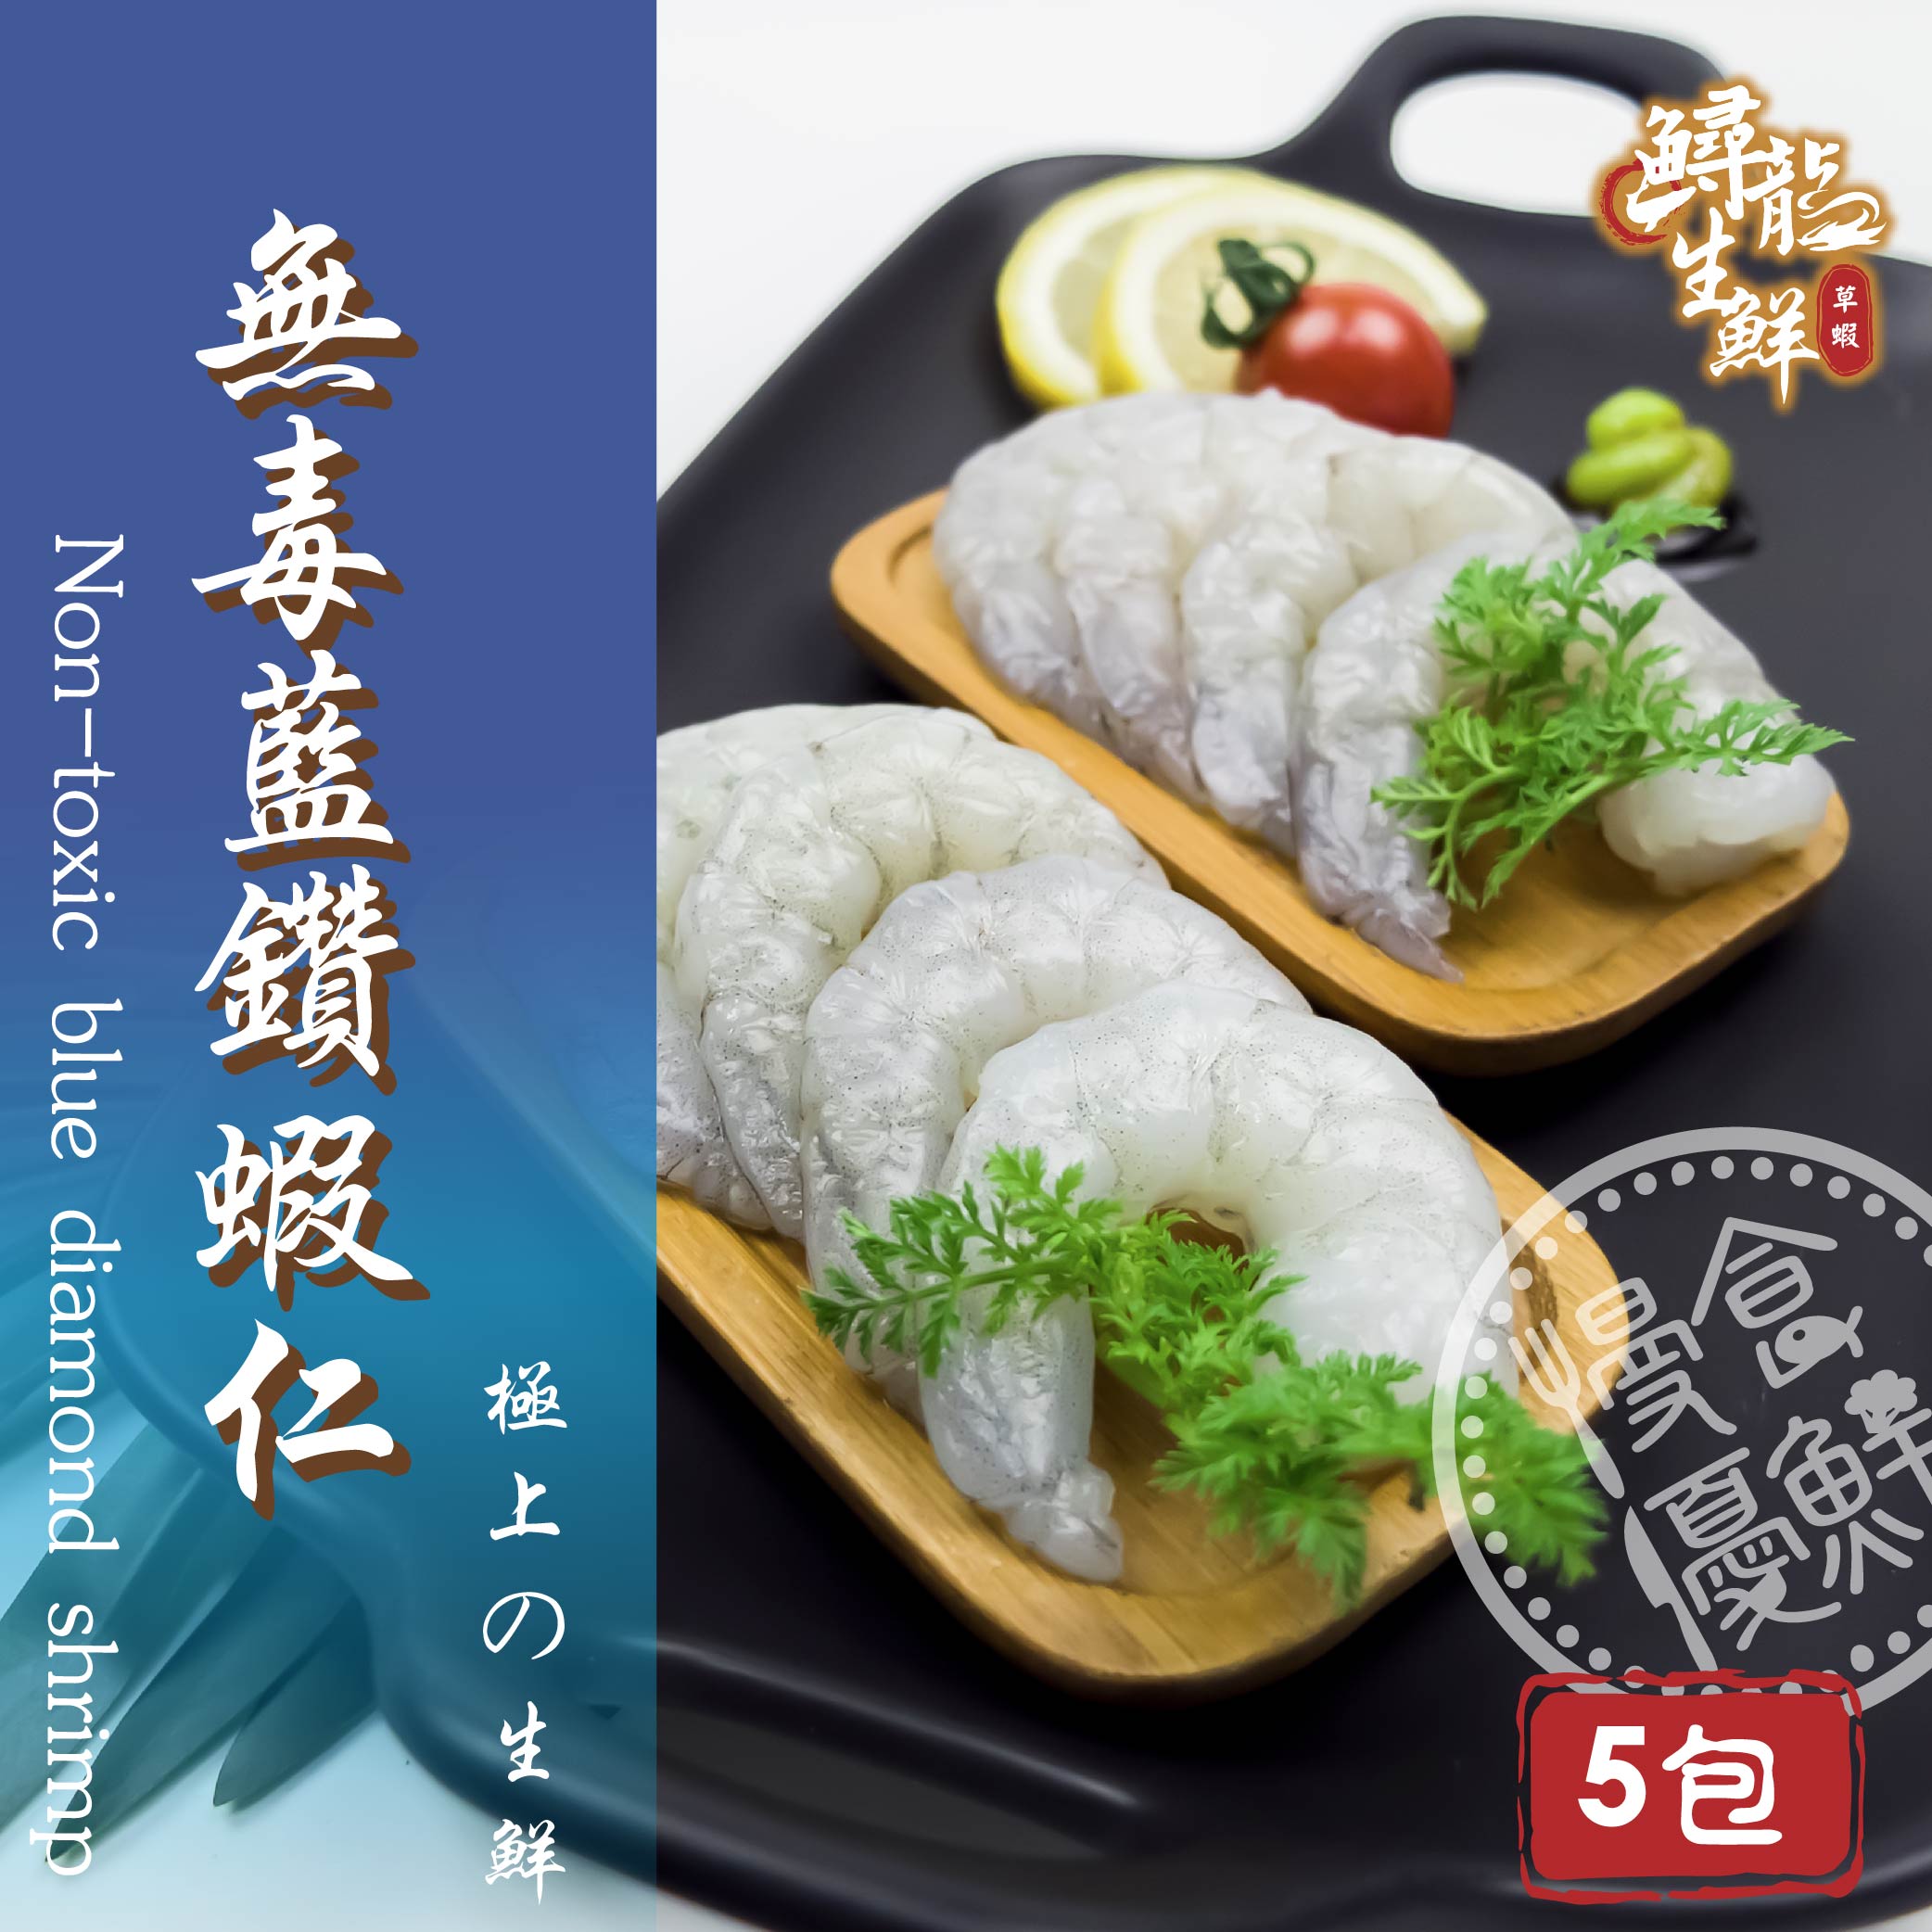 【慢食優鮮】無毒藍鑽蝦仁 (150g/冷凍) 五入組-60℃急速冷凍 無抗生素 無化學添加物